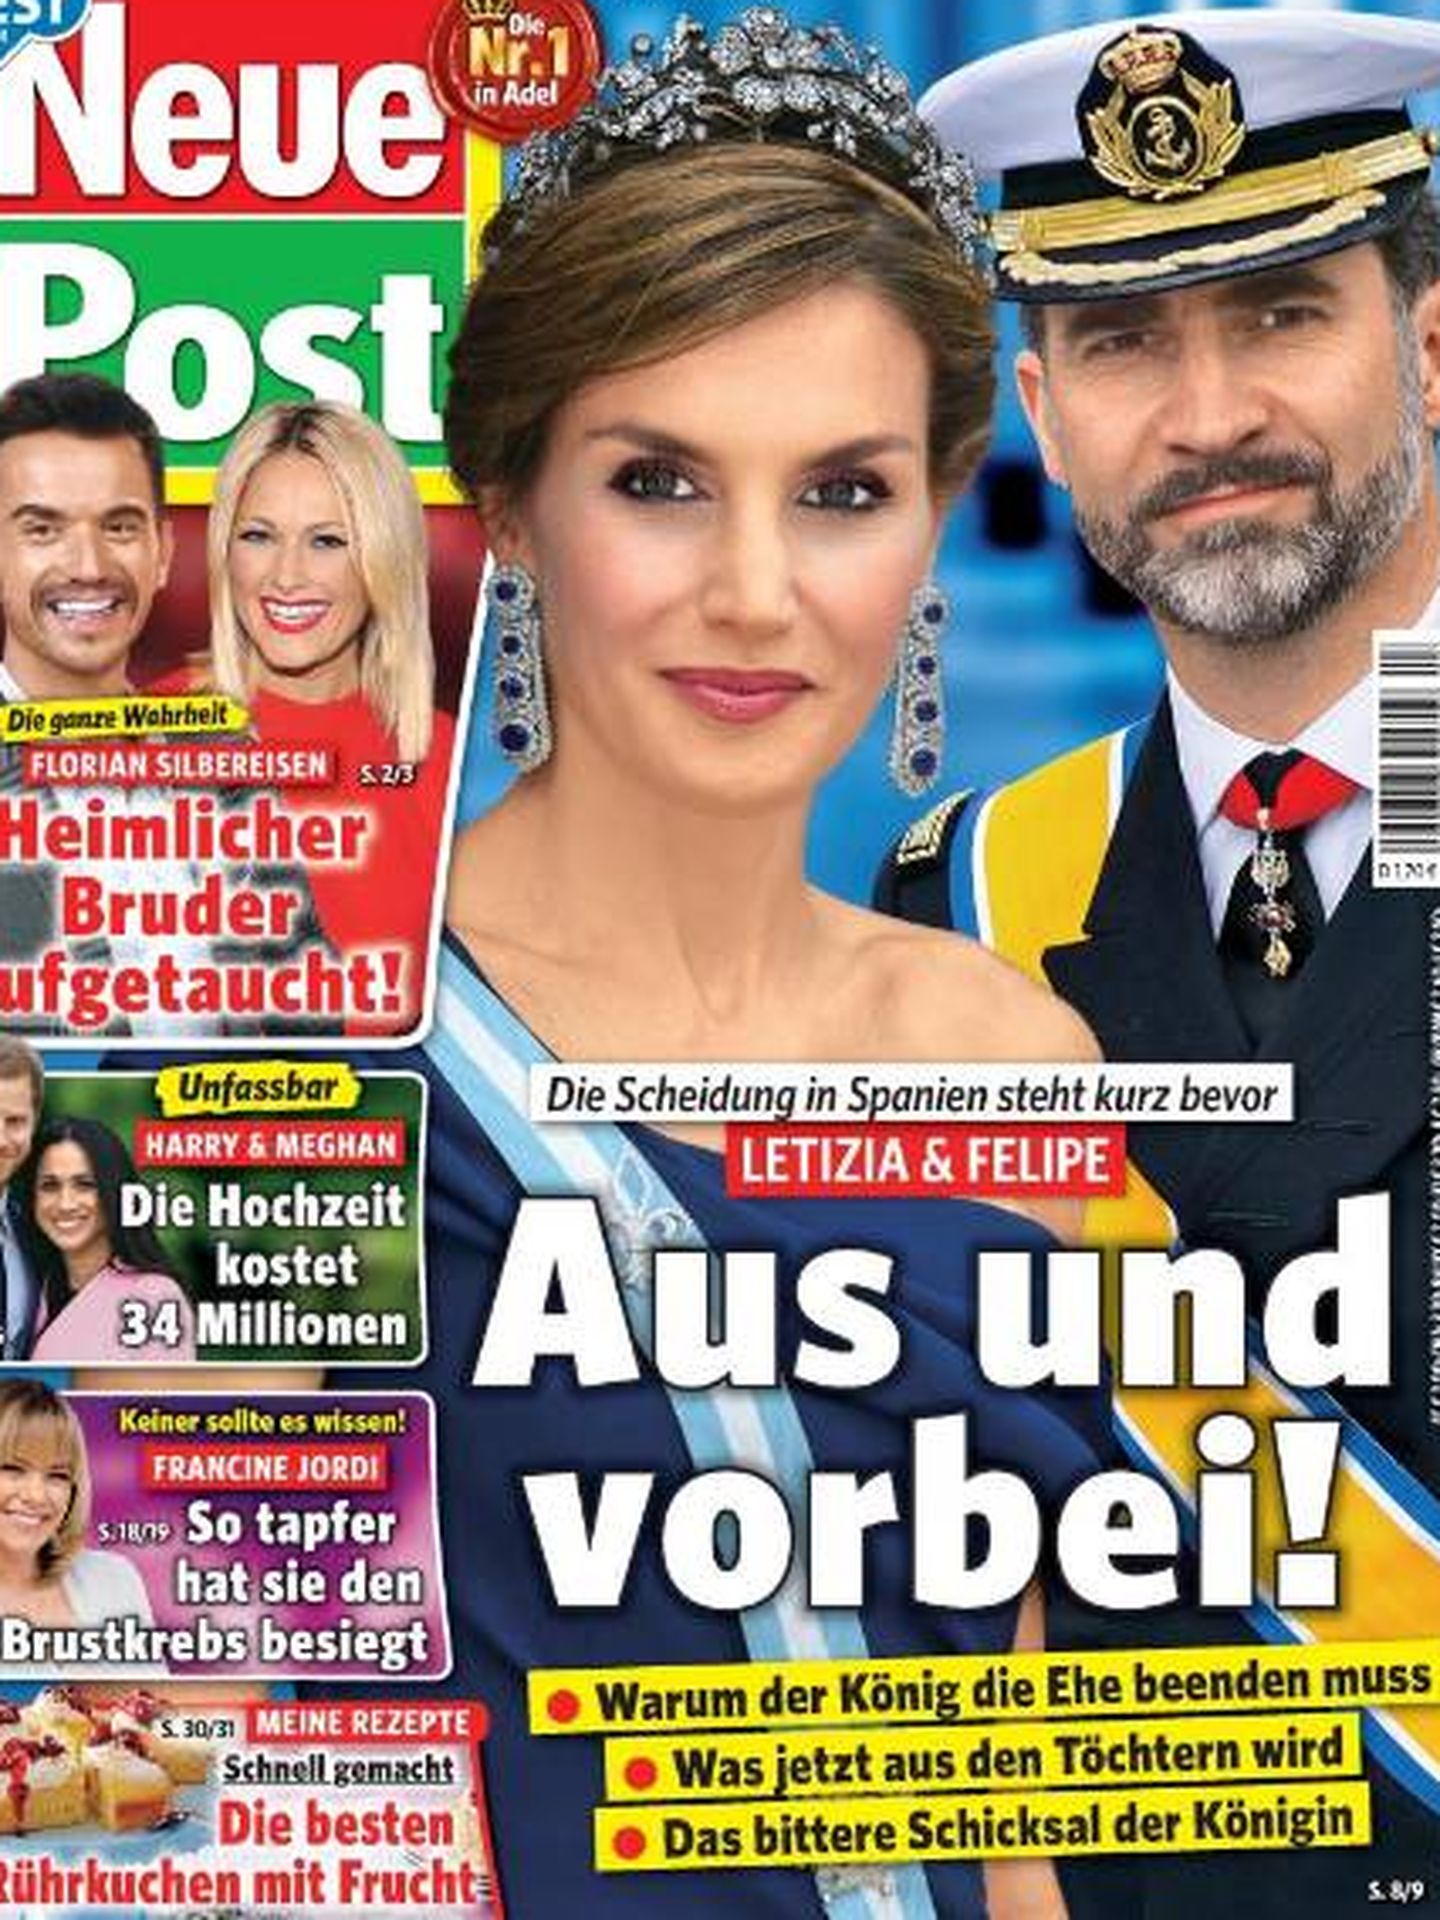 La portada de la mencionada publicación alemana.